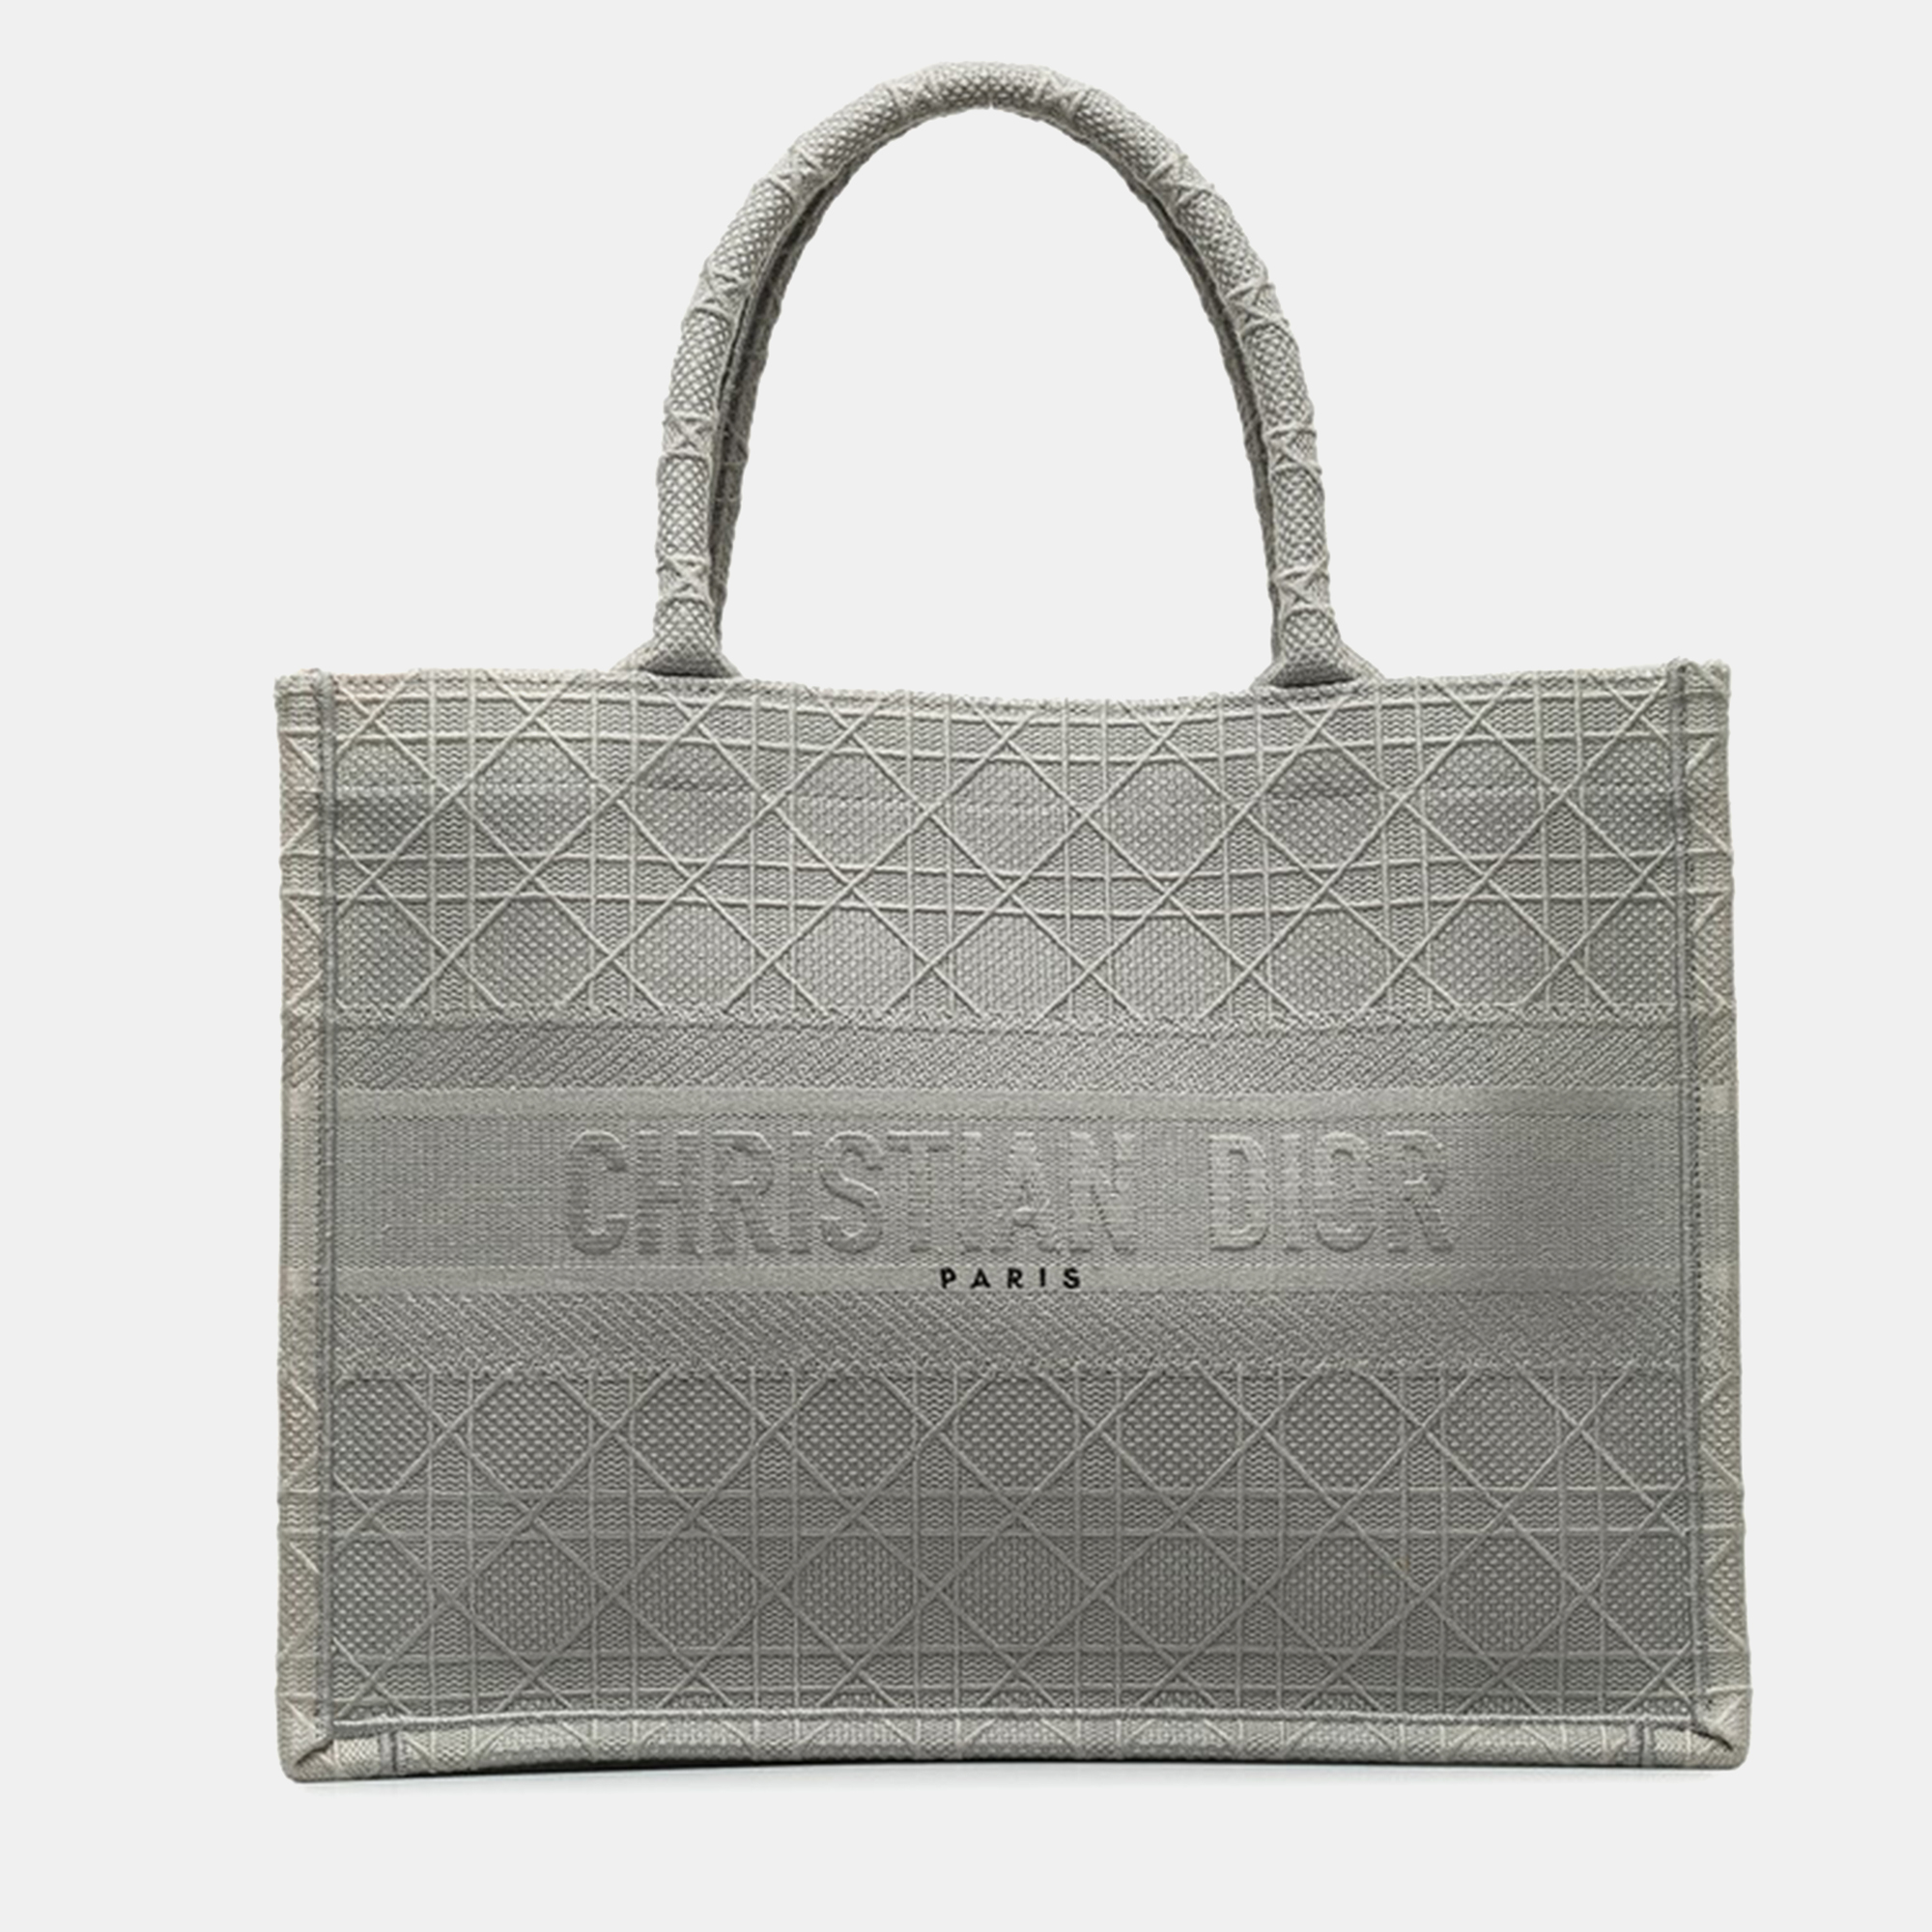 Dior grey canvas medium book tote bag